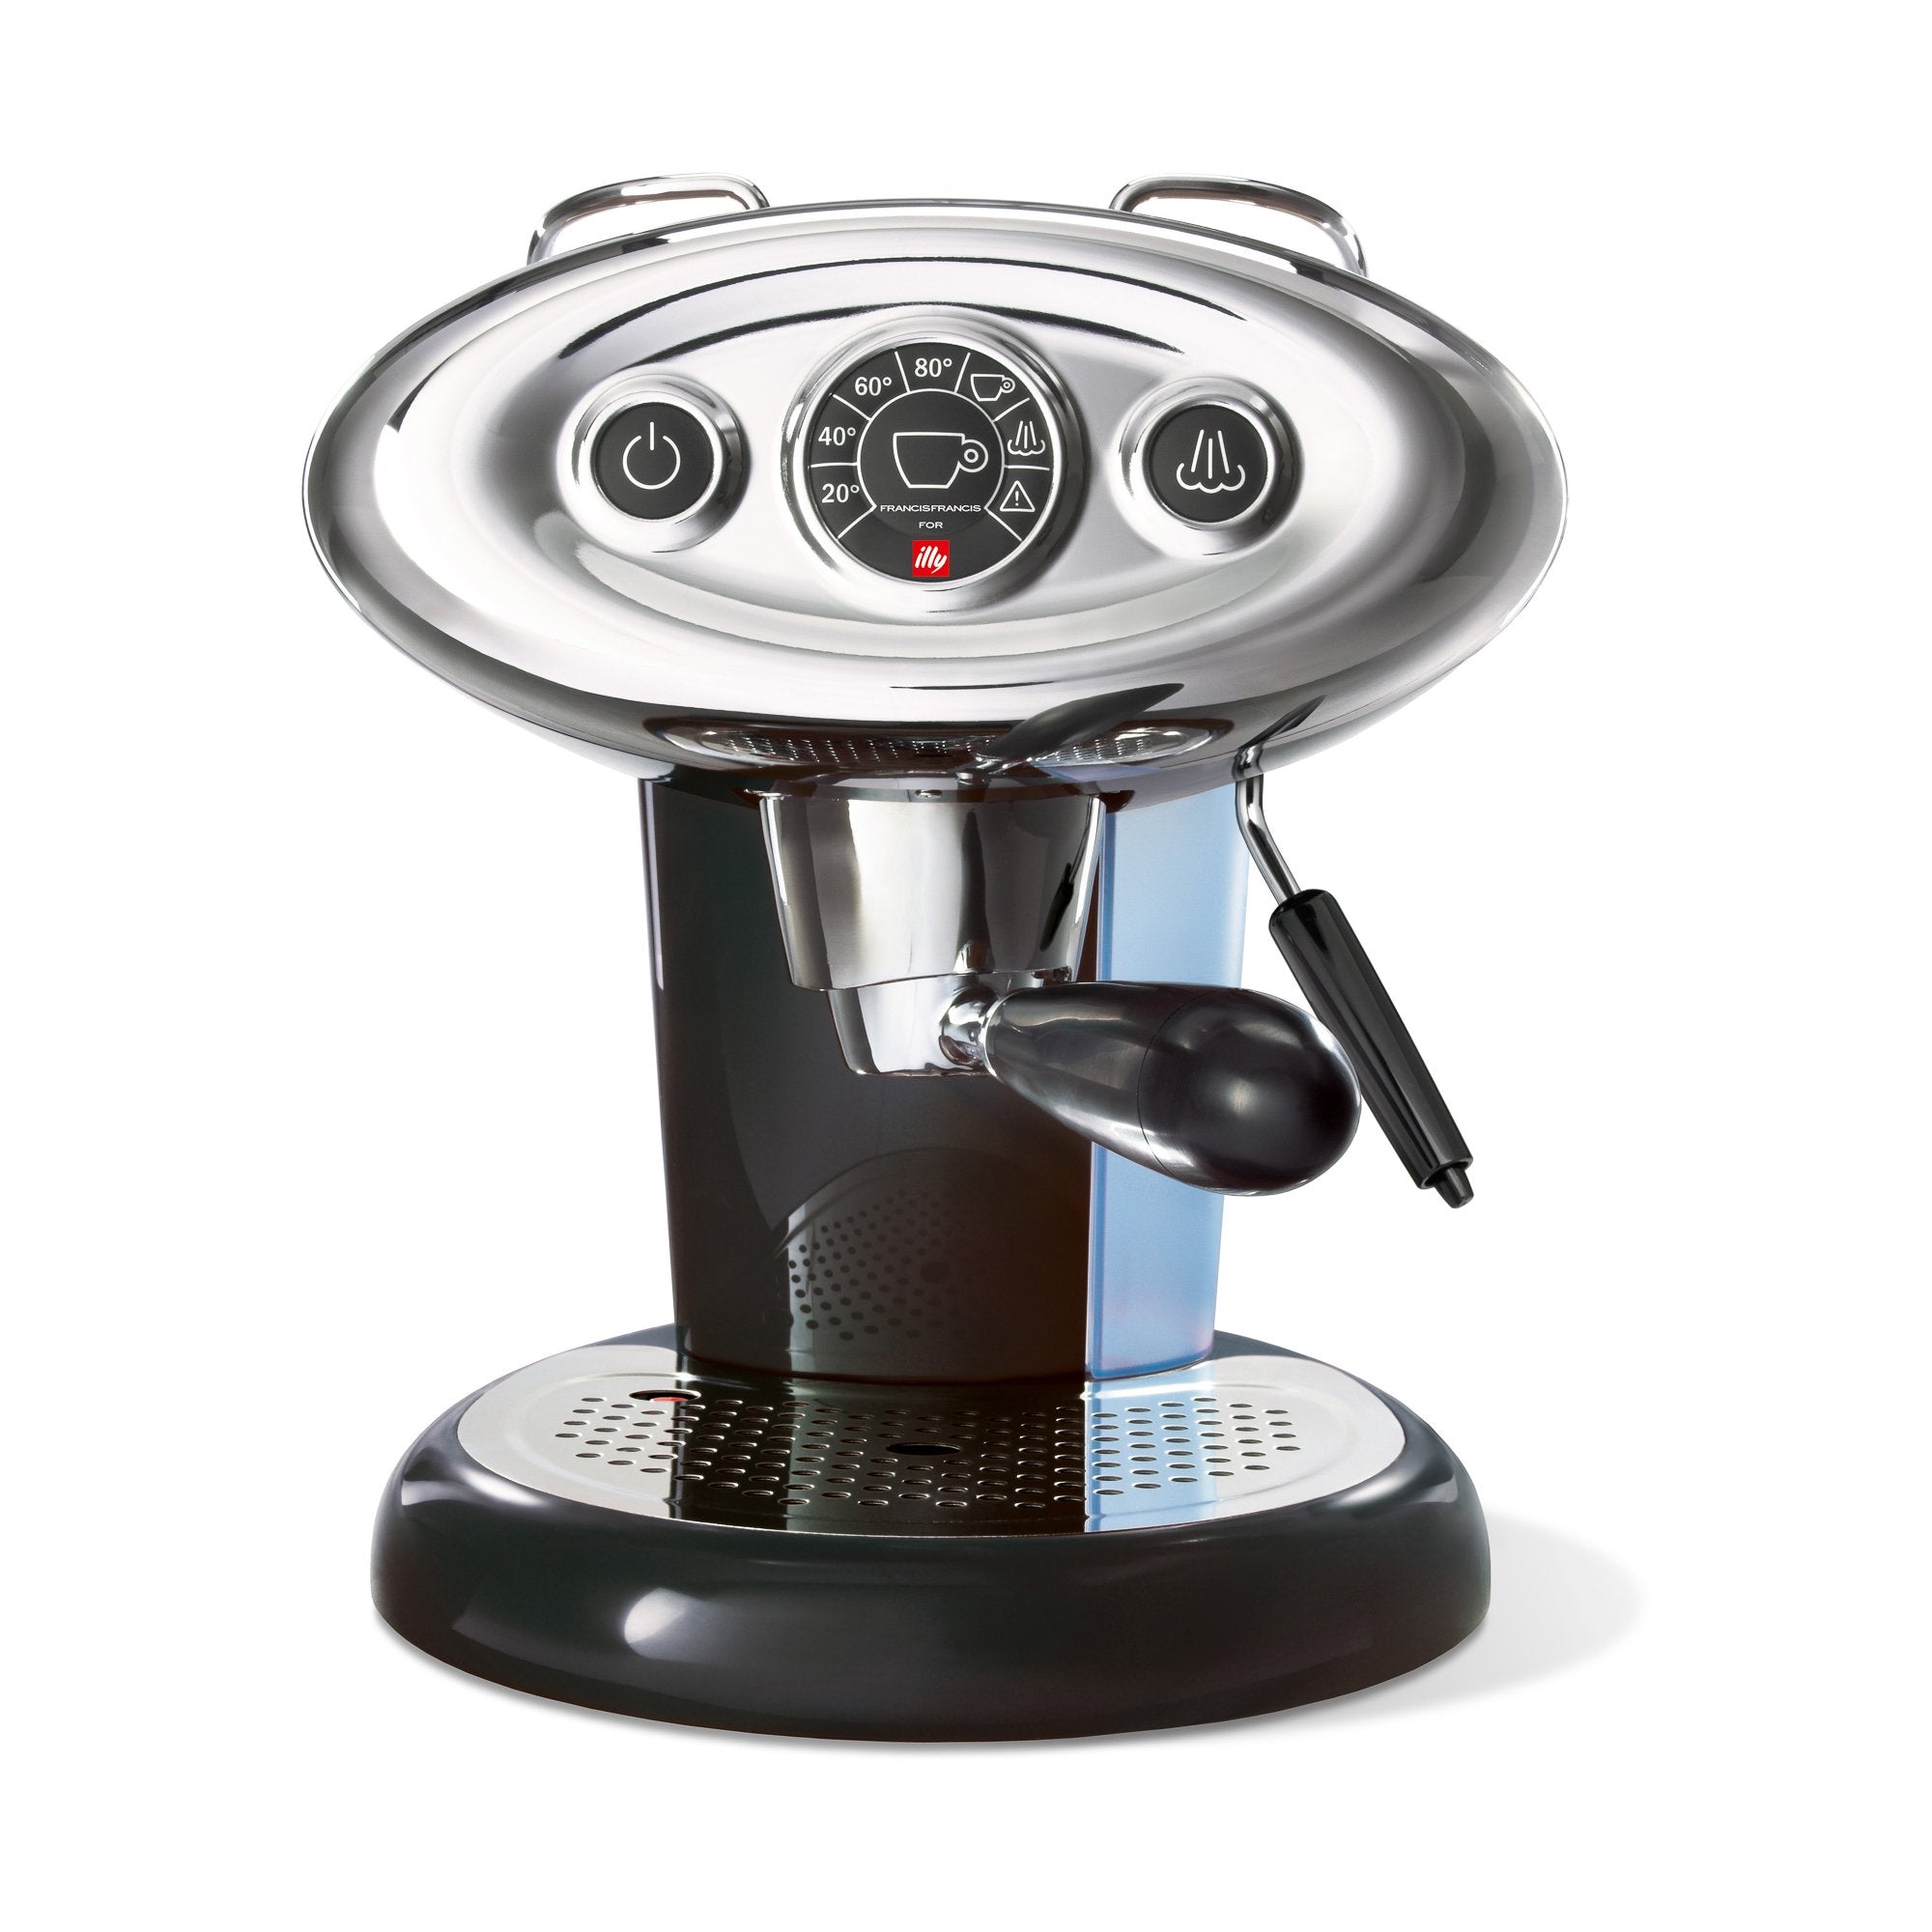 Coffee machine Illy X7.1, black – I love coffee